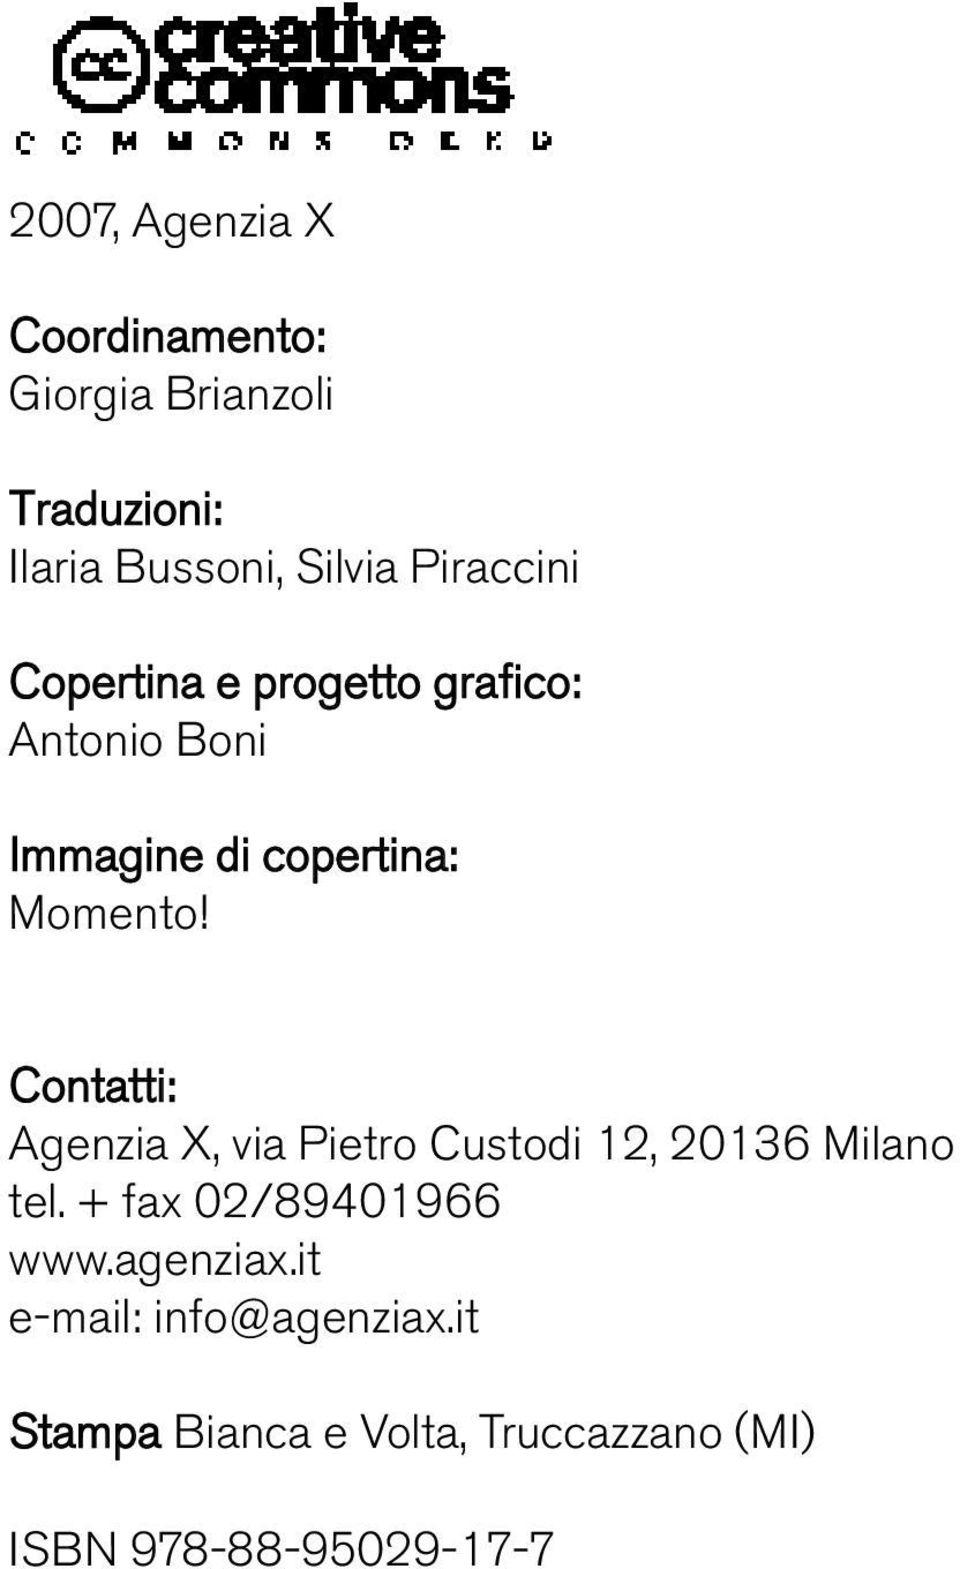 Contatti: Agenzia X, via Pietro Custodi 12, 20136 Milano tel. + fax 02/89401966 www.